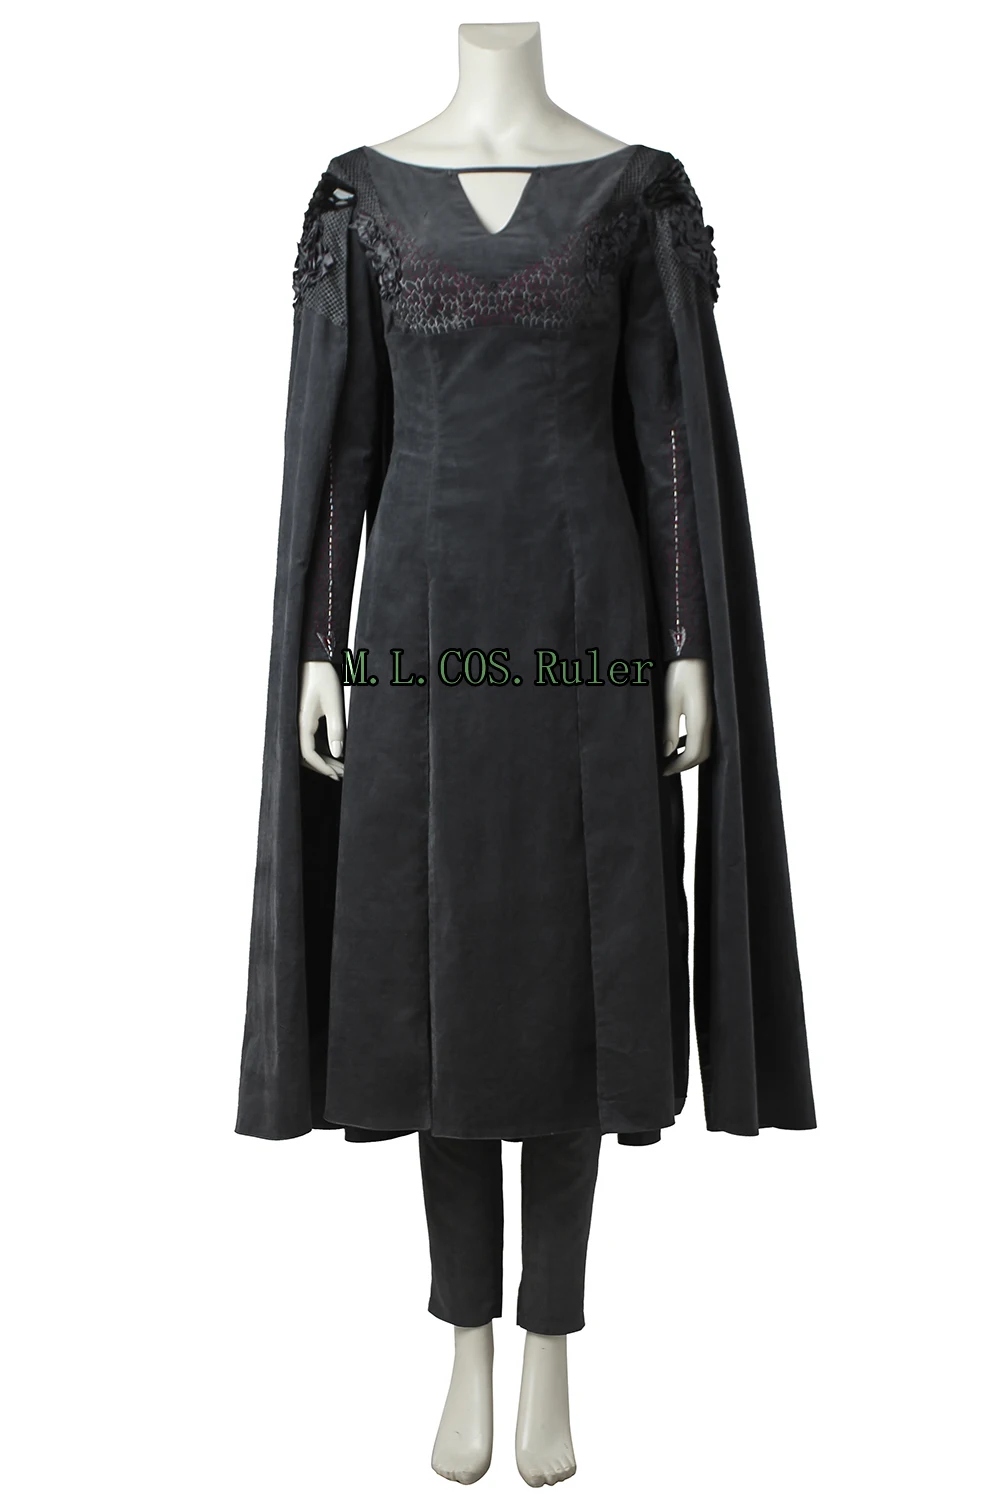 Мать драконов на Хэллоуин из игры престолов сезон 7 Косплей Костюм Дейенерис Таргариен женские платья только на заказ